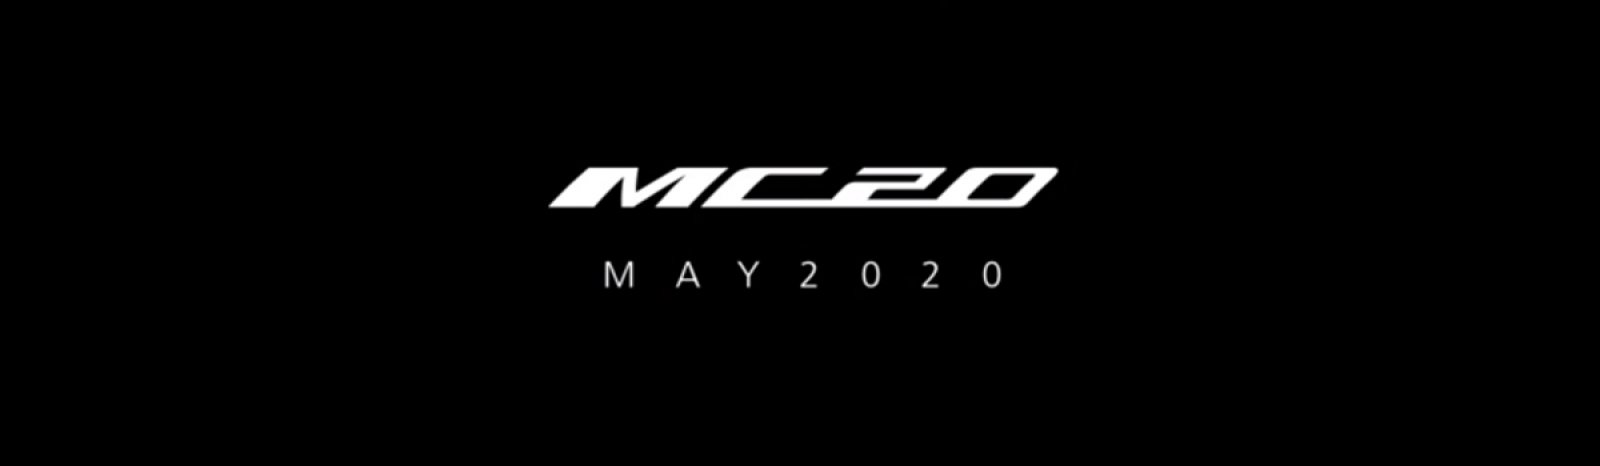 MASERATI MC20: Der neue Supersportwagen der Marke mit dem Dreizack  bekommt seinen Namen